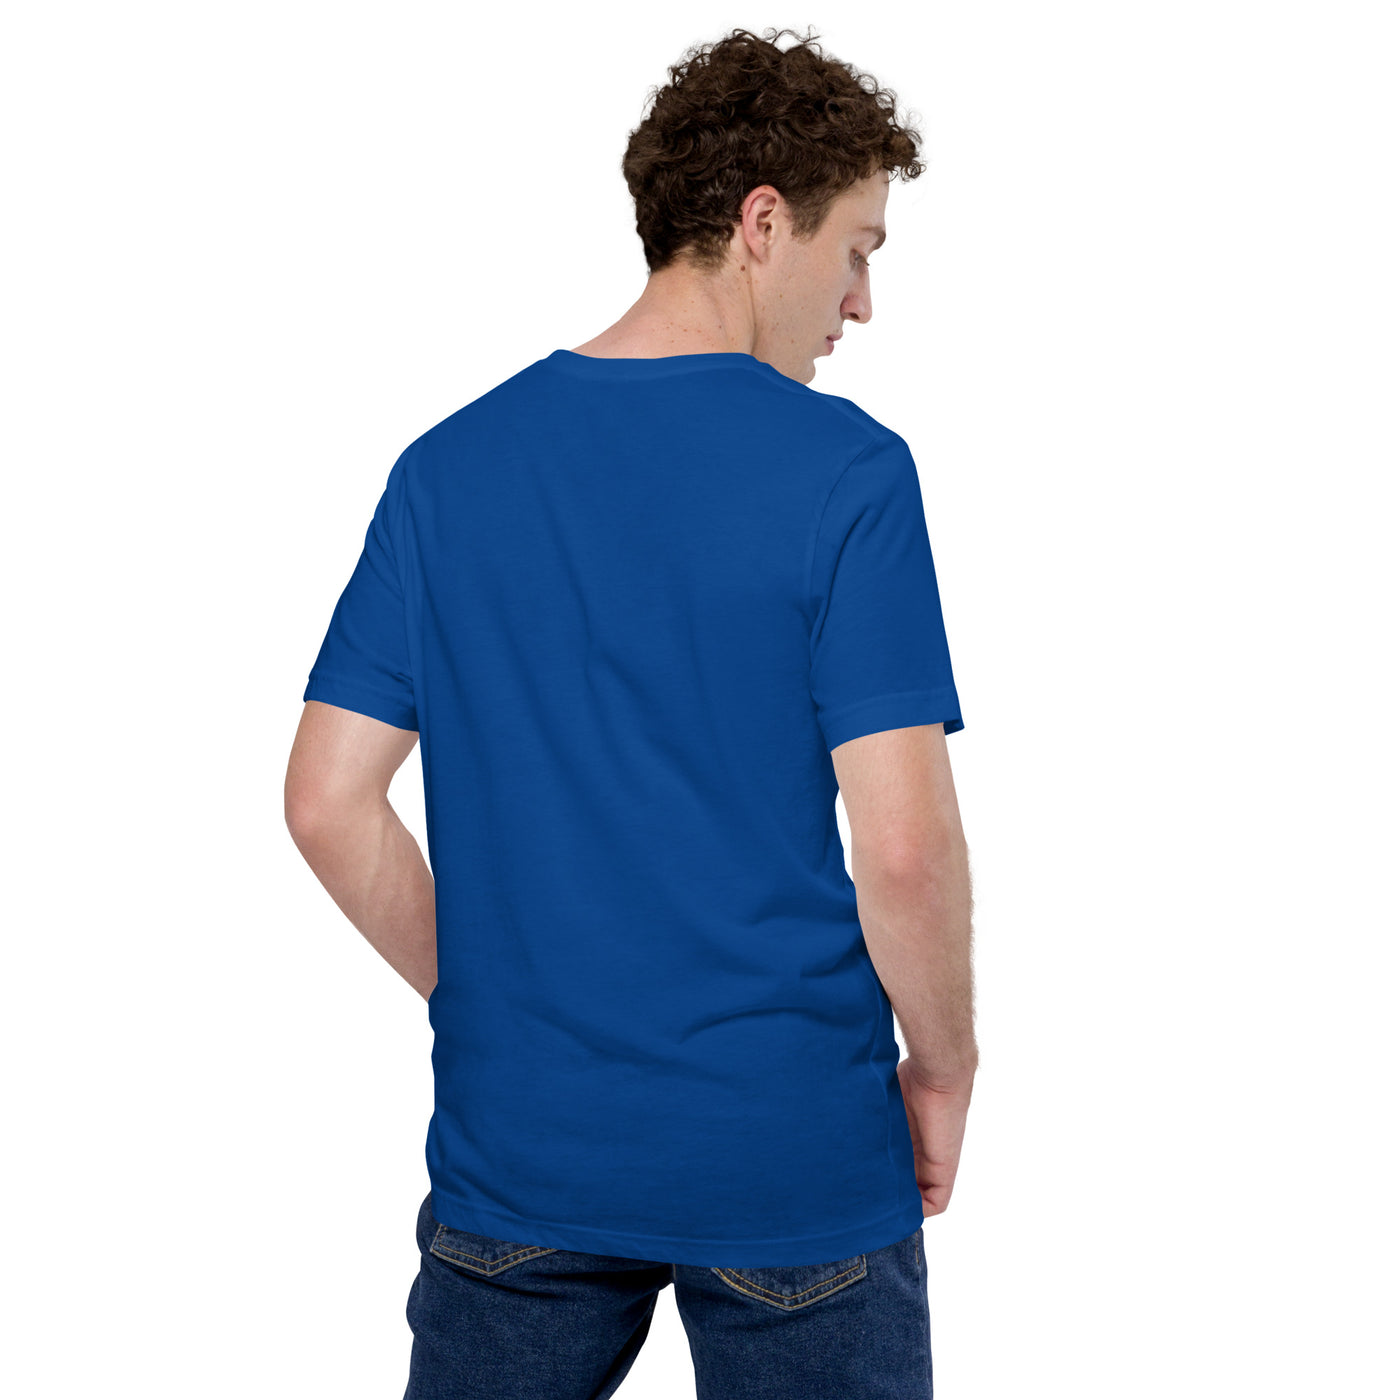 Only Vector V1 - Unisex t-shirt